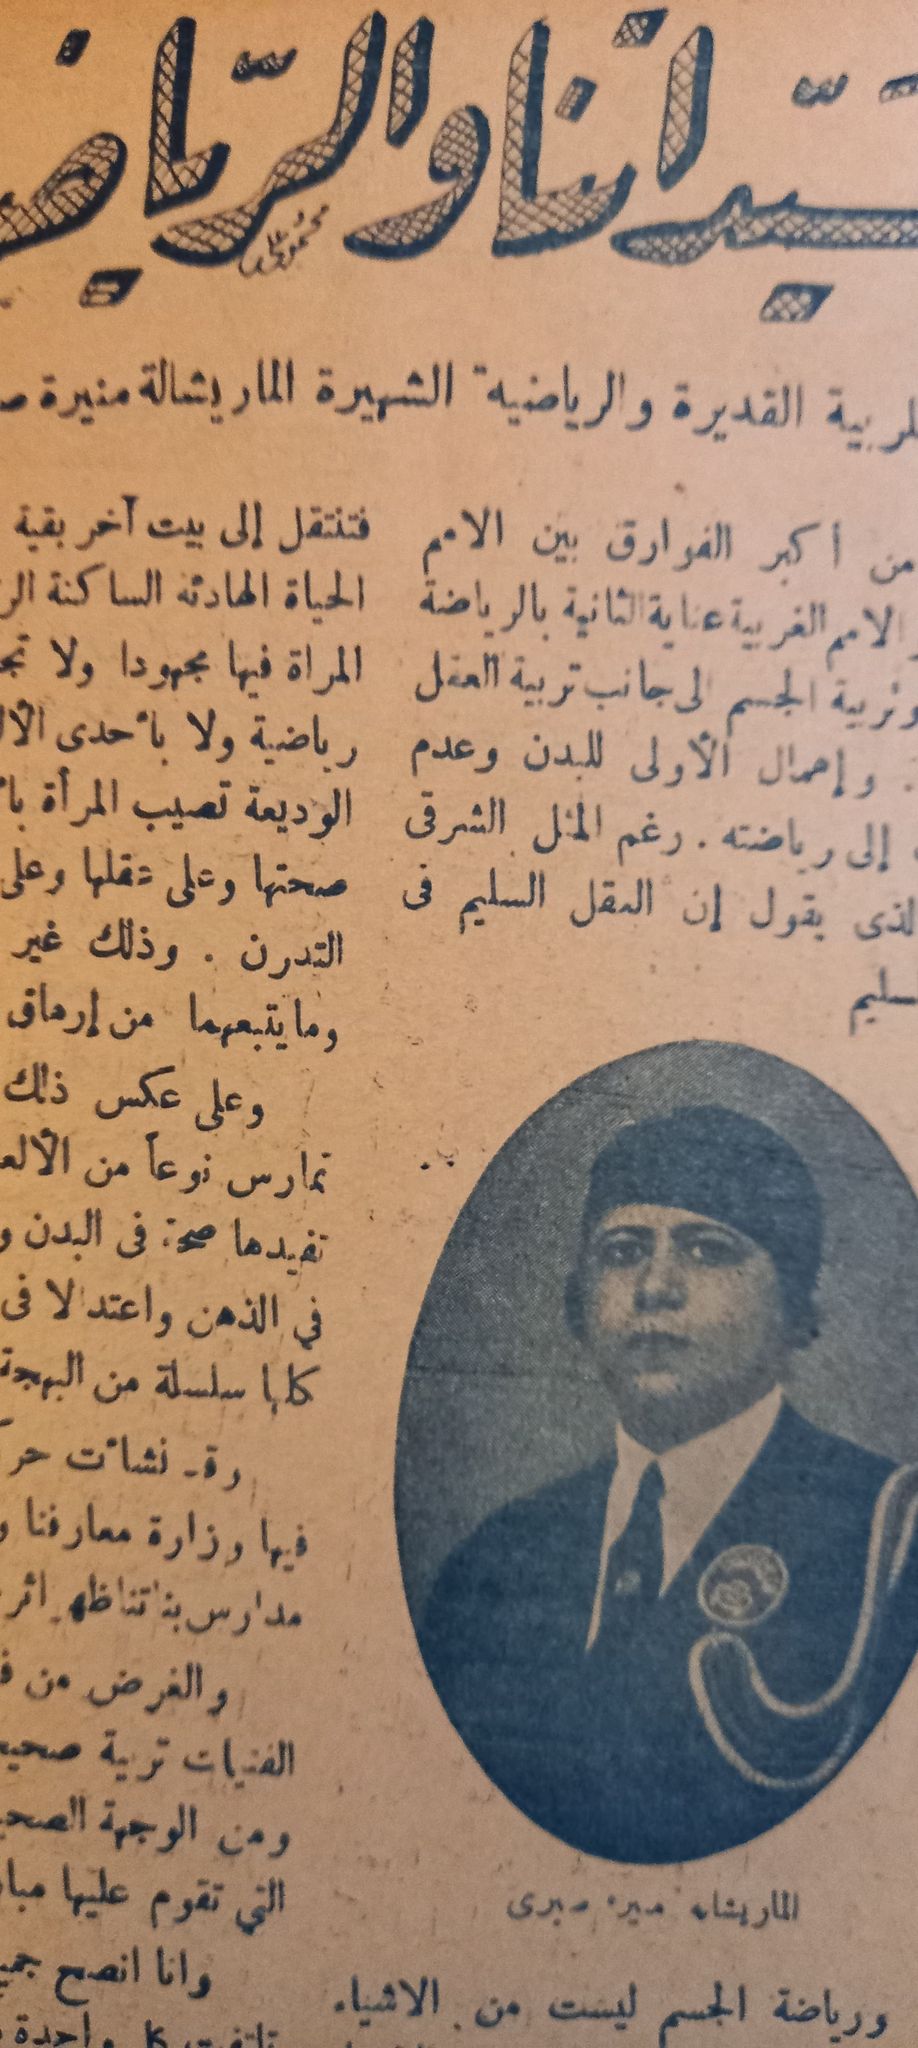 ملف نسائي عن المرأة المصرية عام 1934